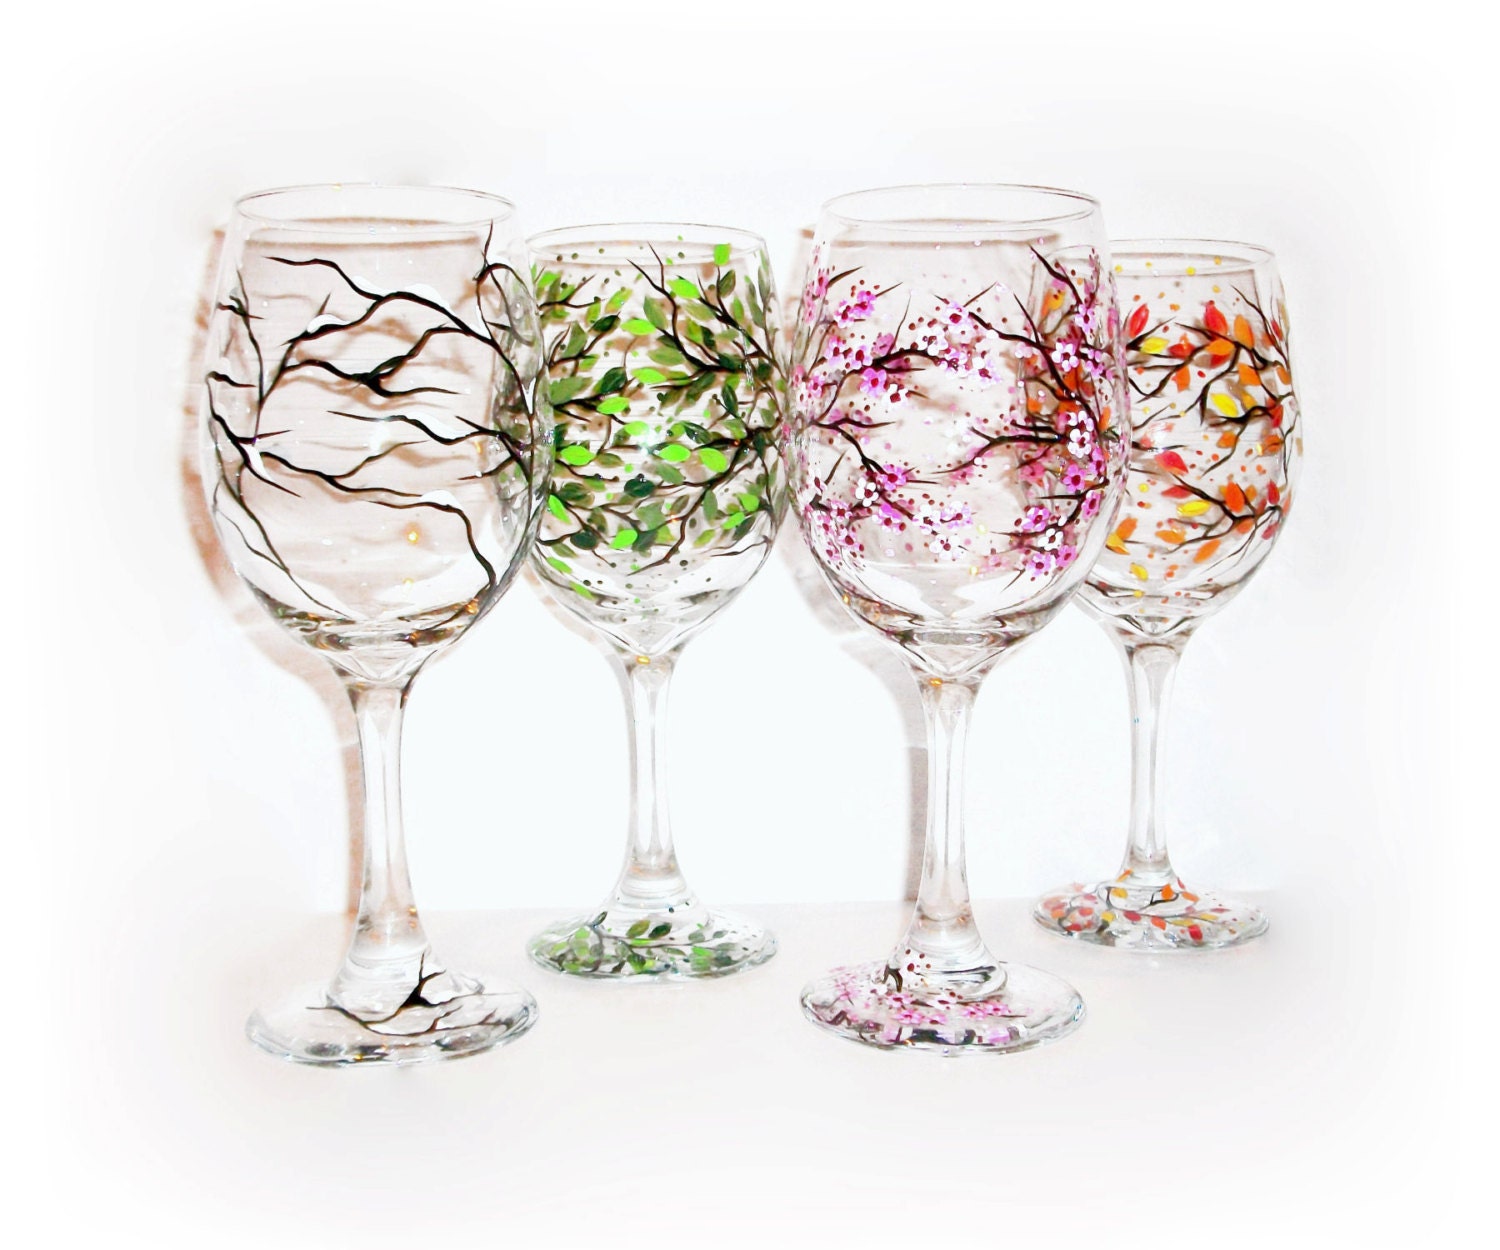 SAKEMA Verres à vin d'arbre de quatre saisons - Art peint à la main, verres  à vin peints de printemps été automne hiver, verres colorés de conception